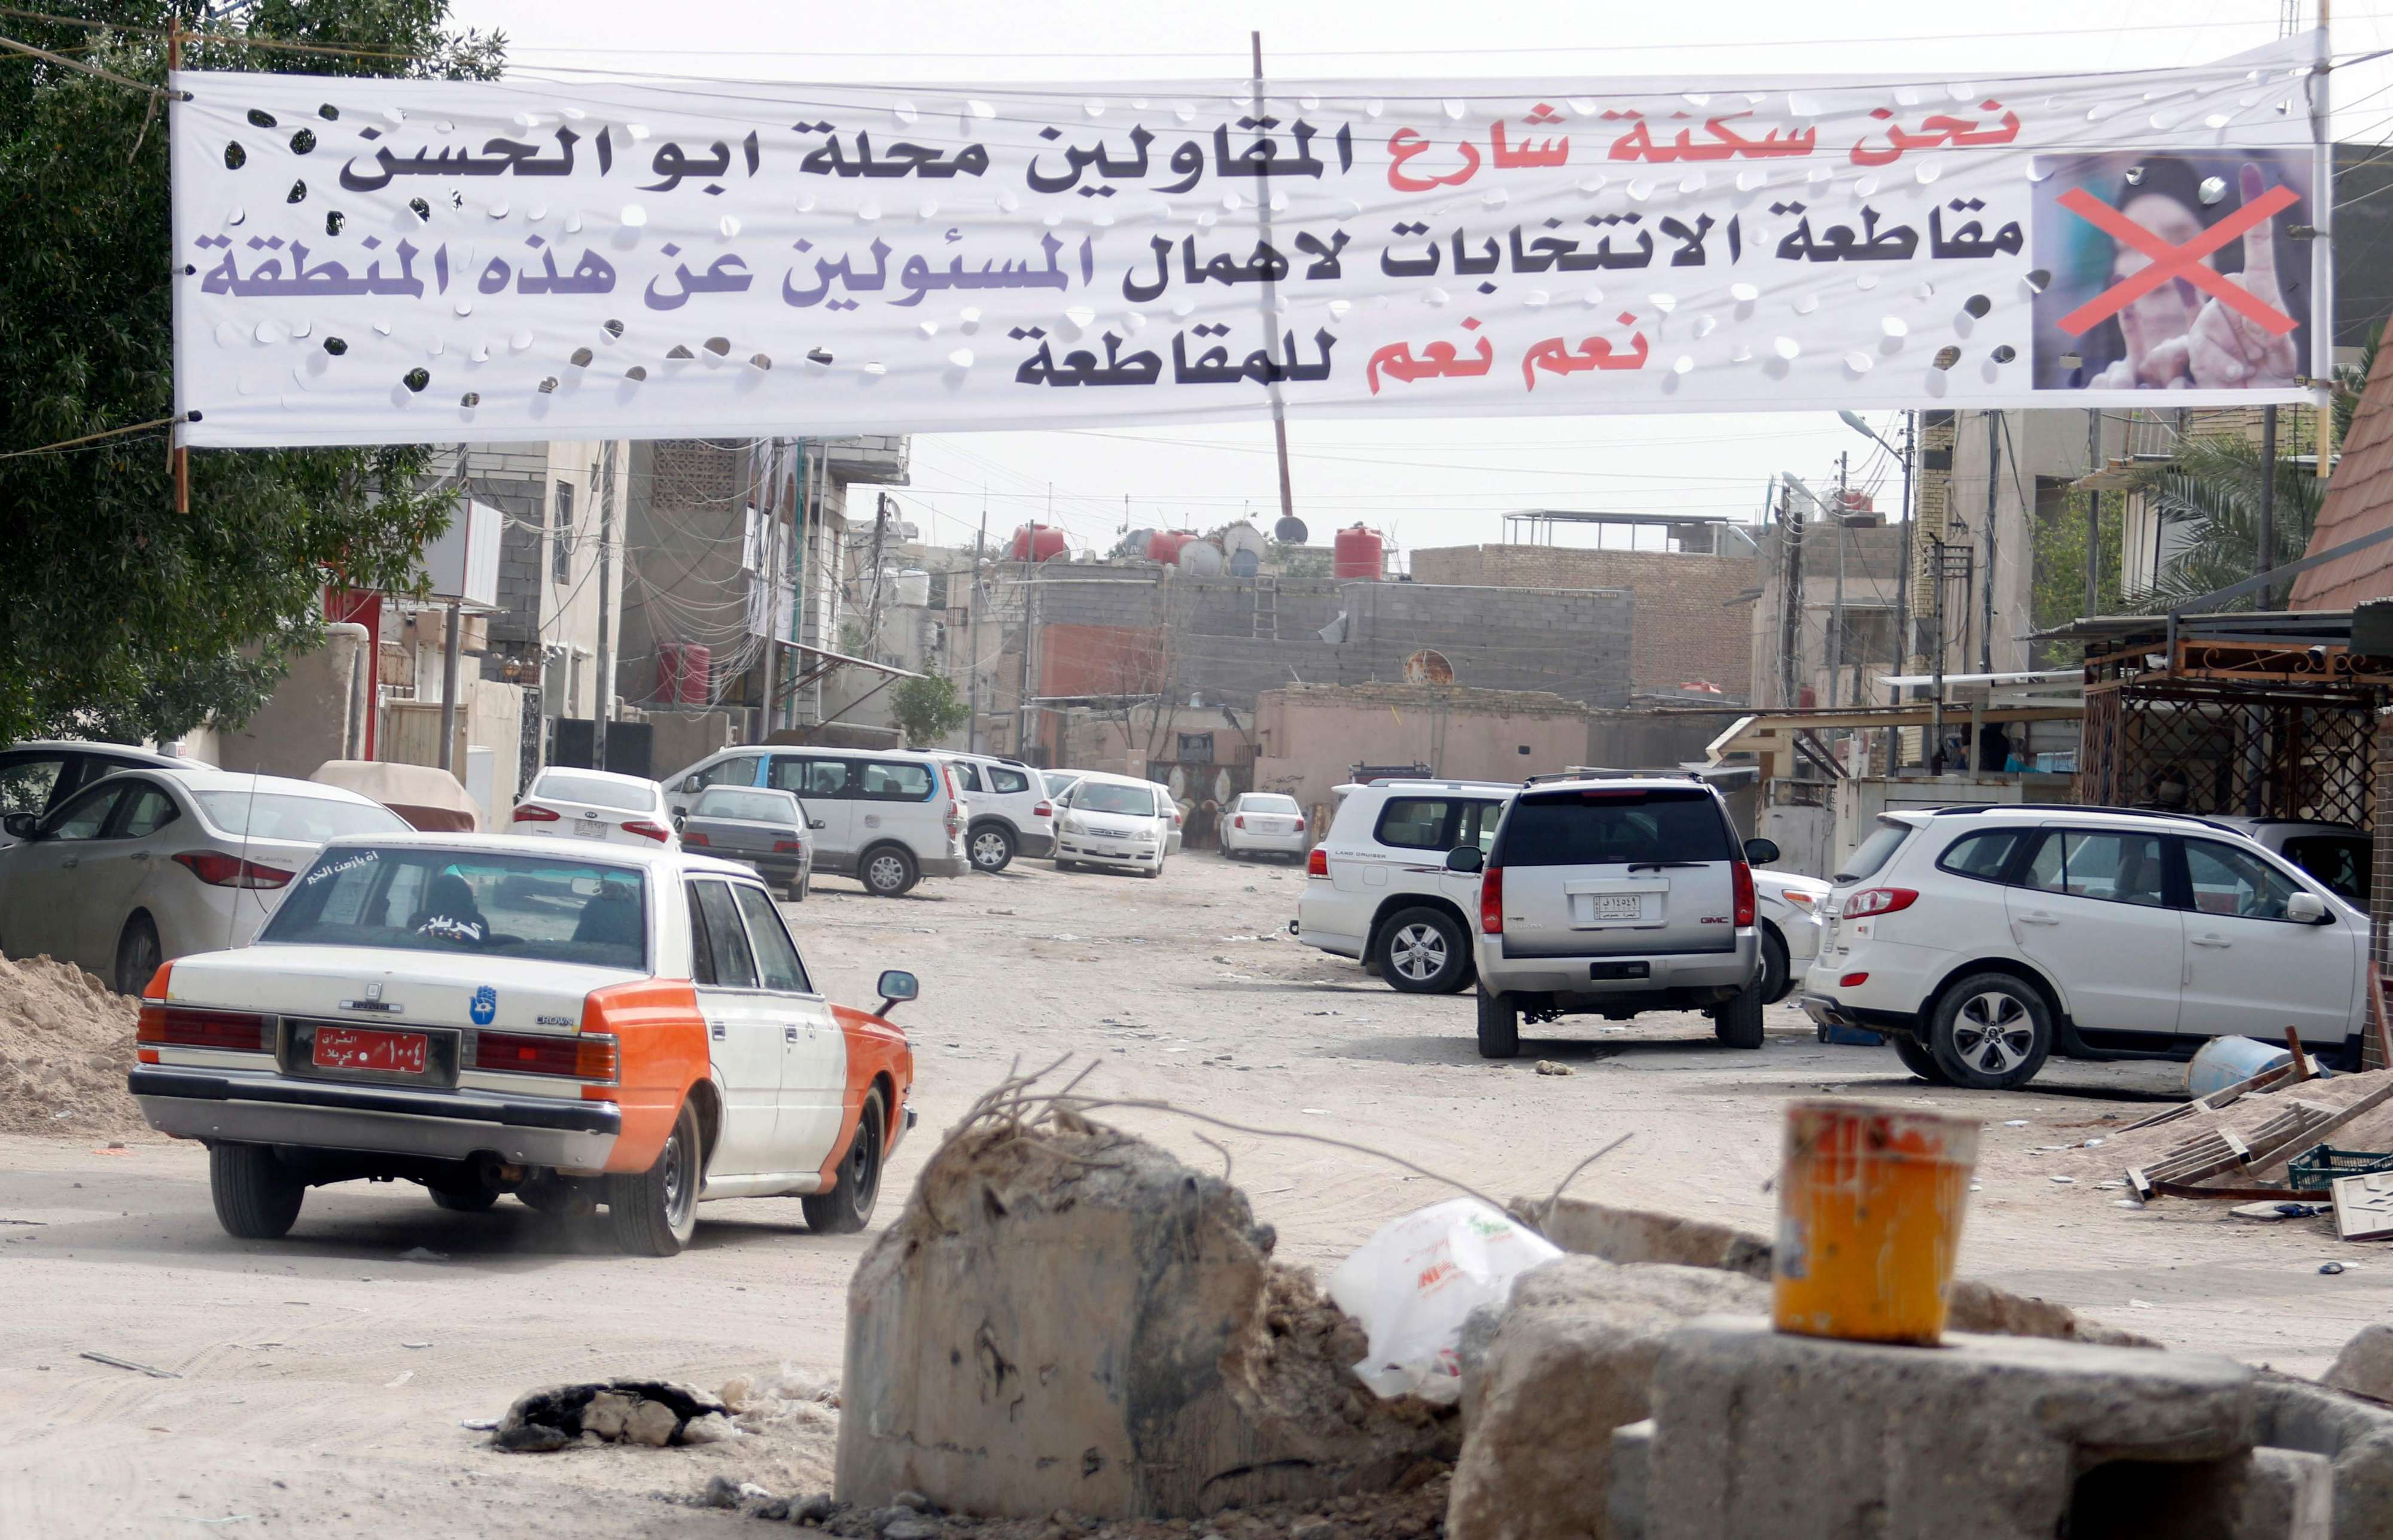 اعلانات في شوارع العراق تدعو إلى مقاطعة الانتخابات